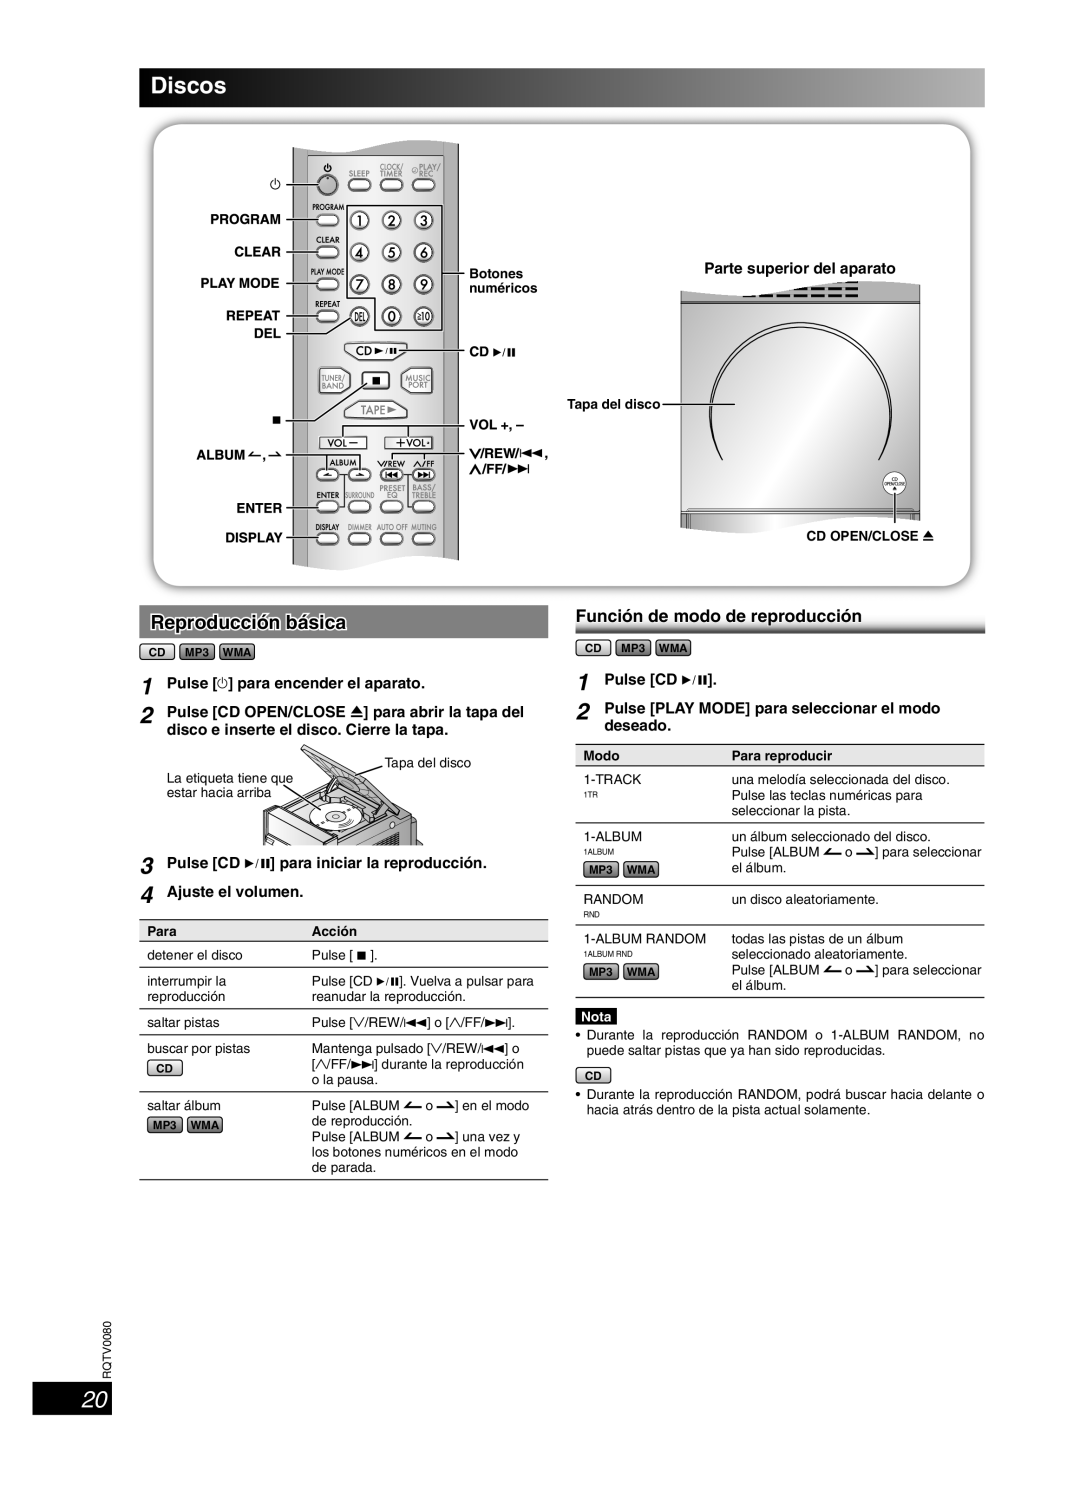 Panasonic SC-PM23 Discos, Reproducción básica, Función de modo de reproducción, Pulse y para encender el aparato, Nota 